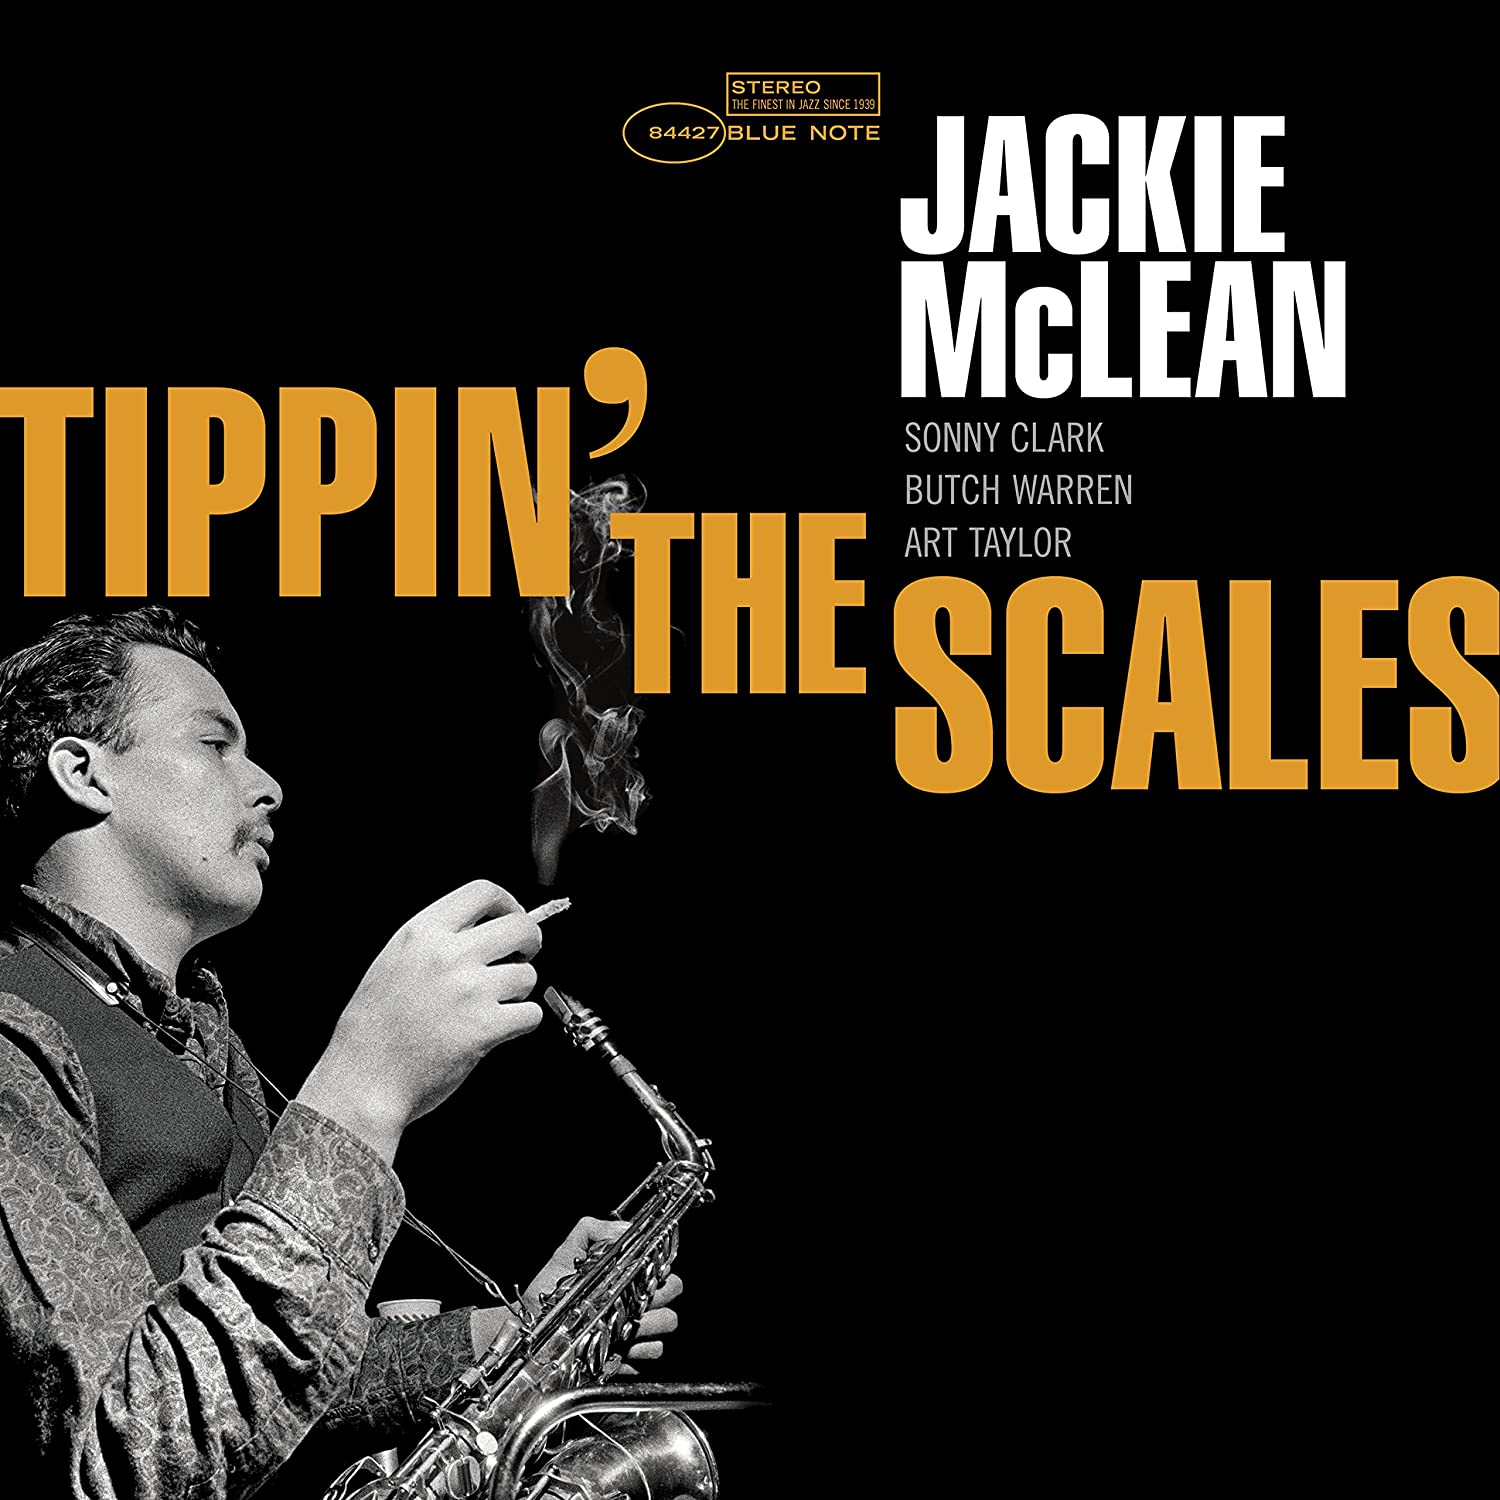 JACKIE MCLEAN - TIPPIN' THE SCALES Vinyl LP